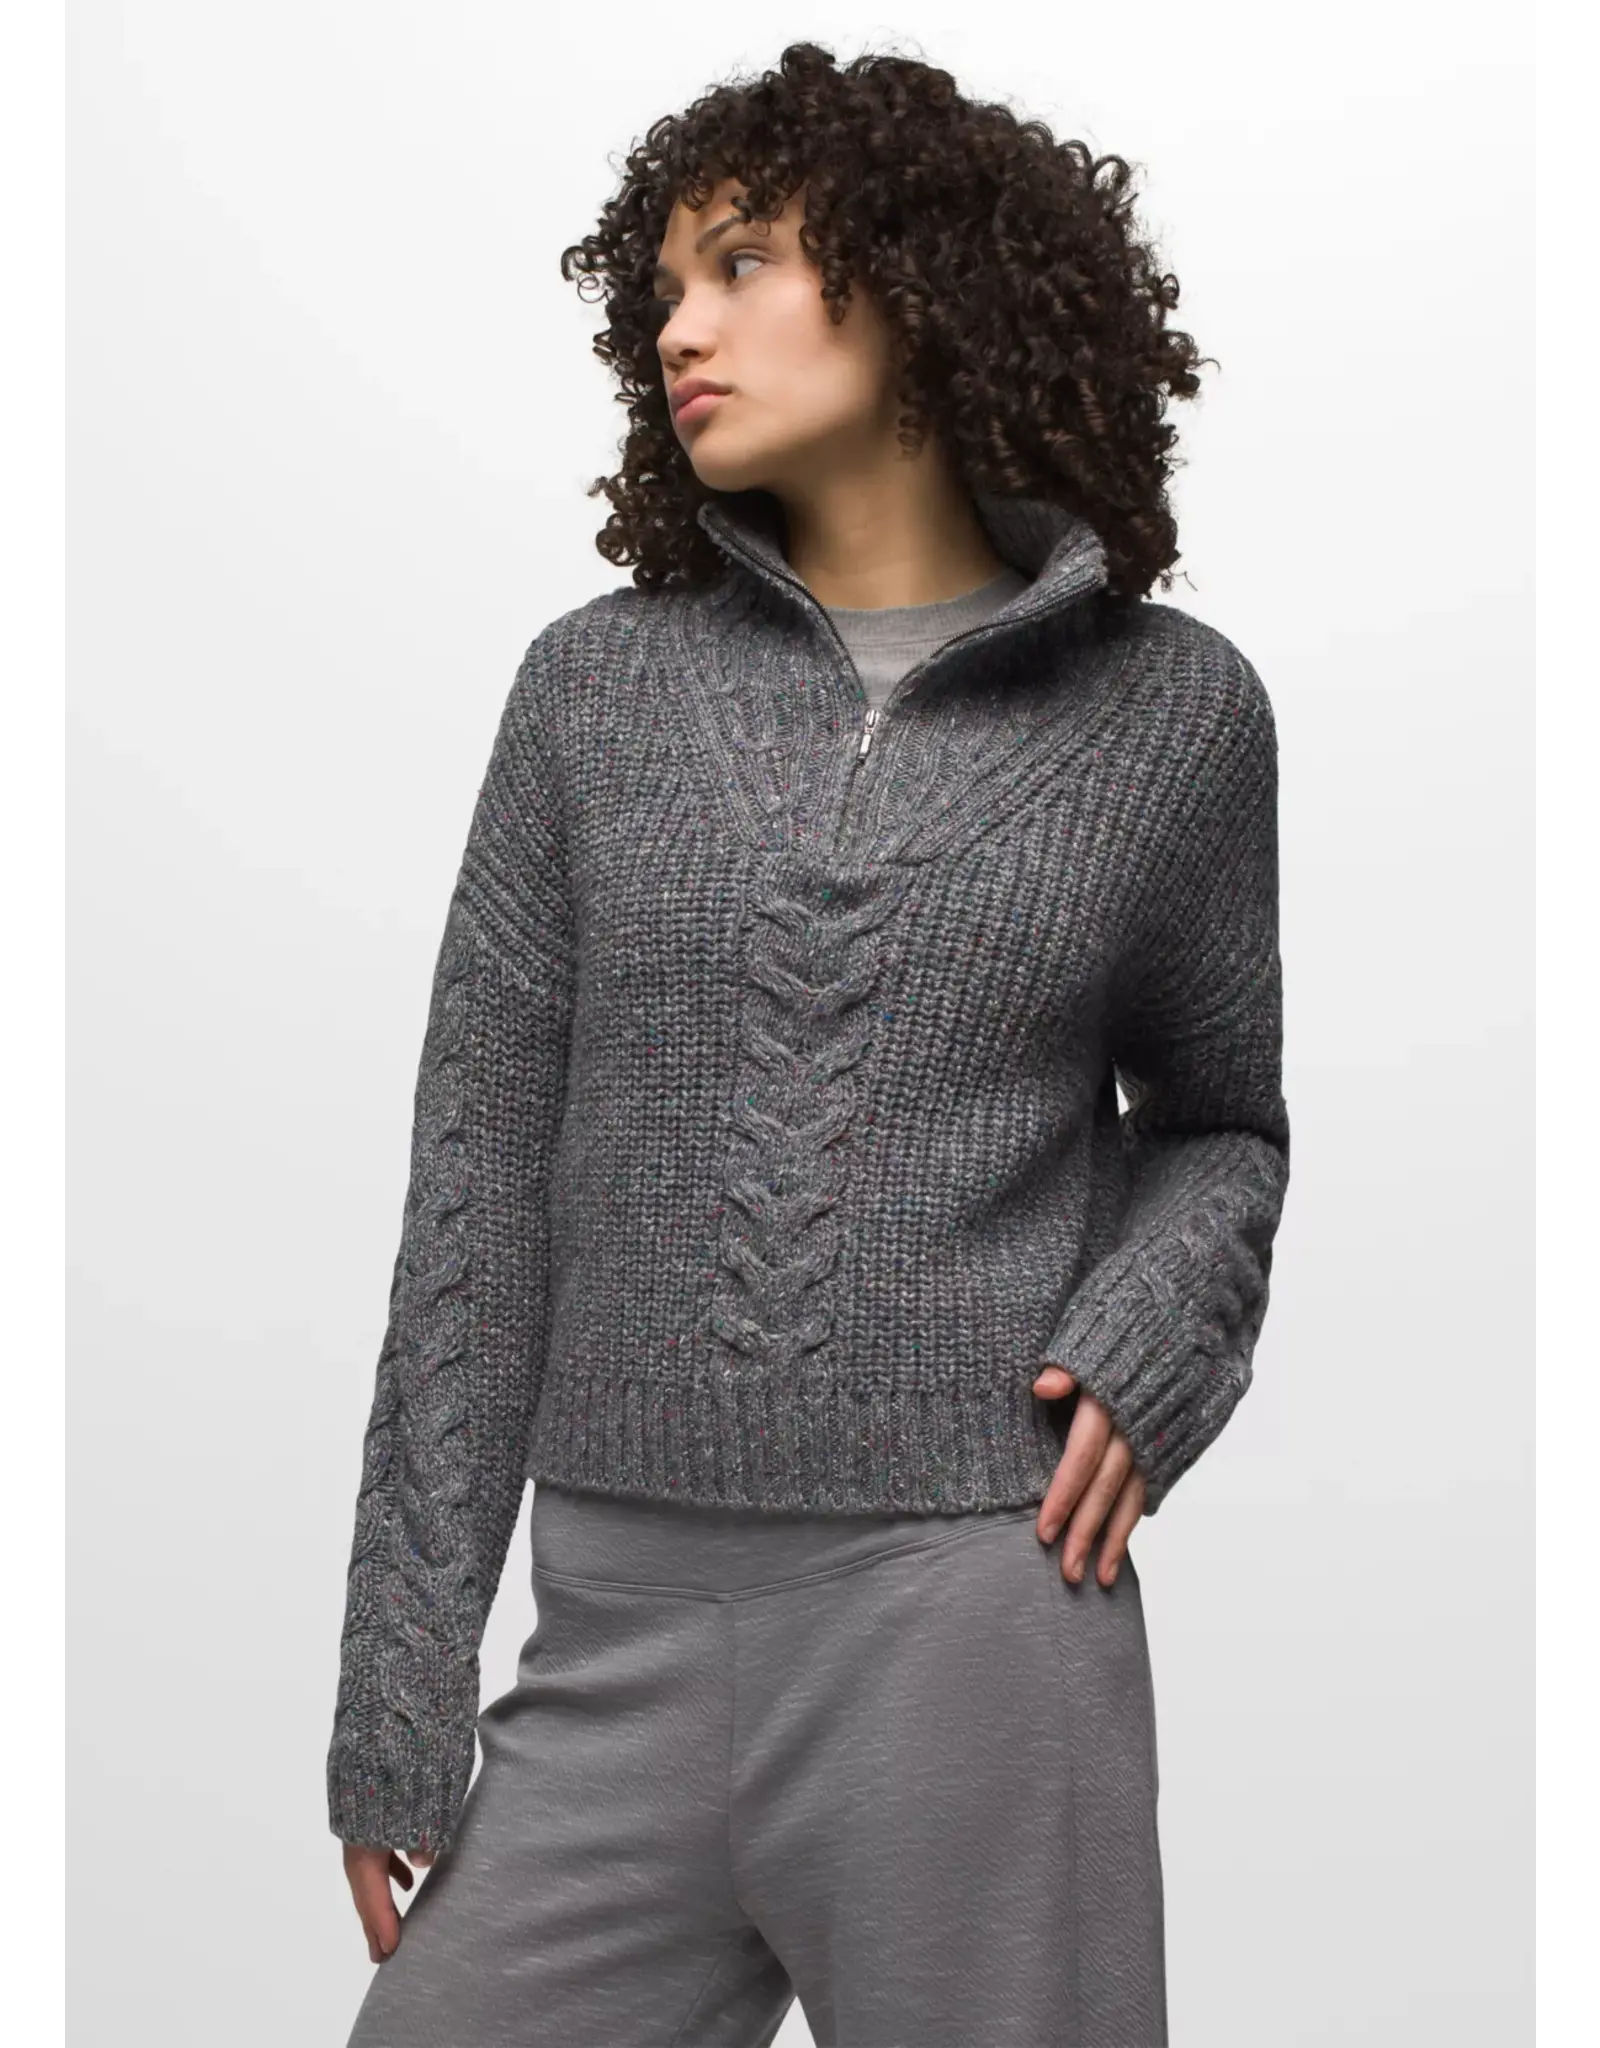 Prana Laurel Creek Sweater